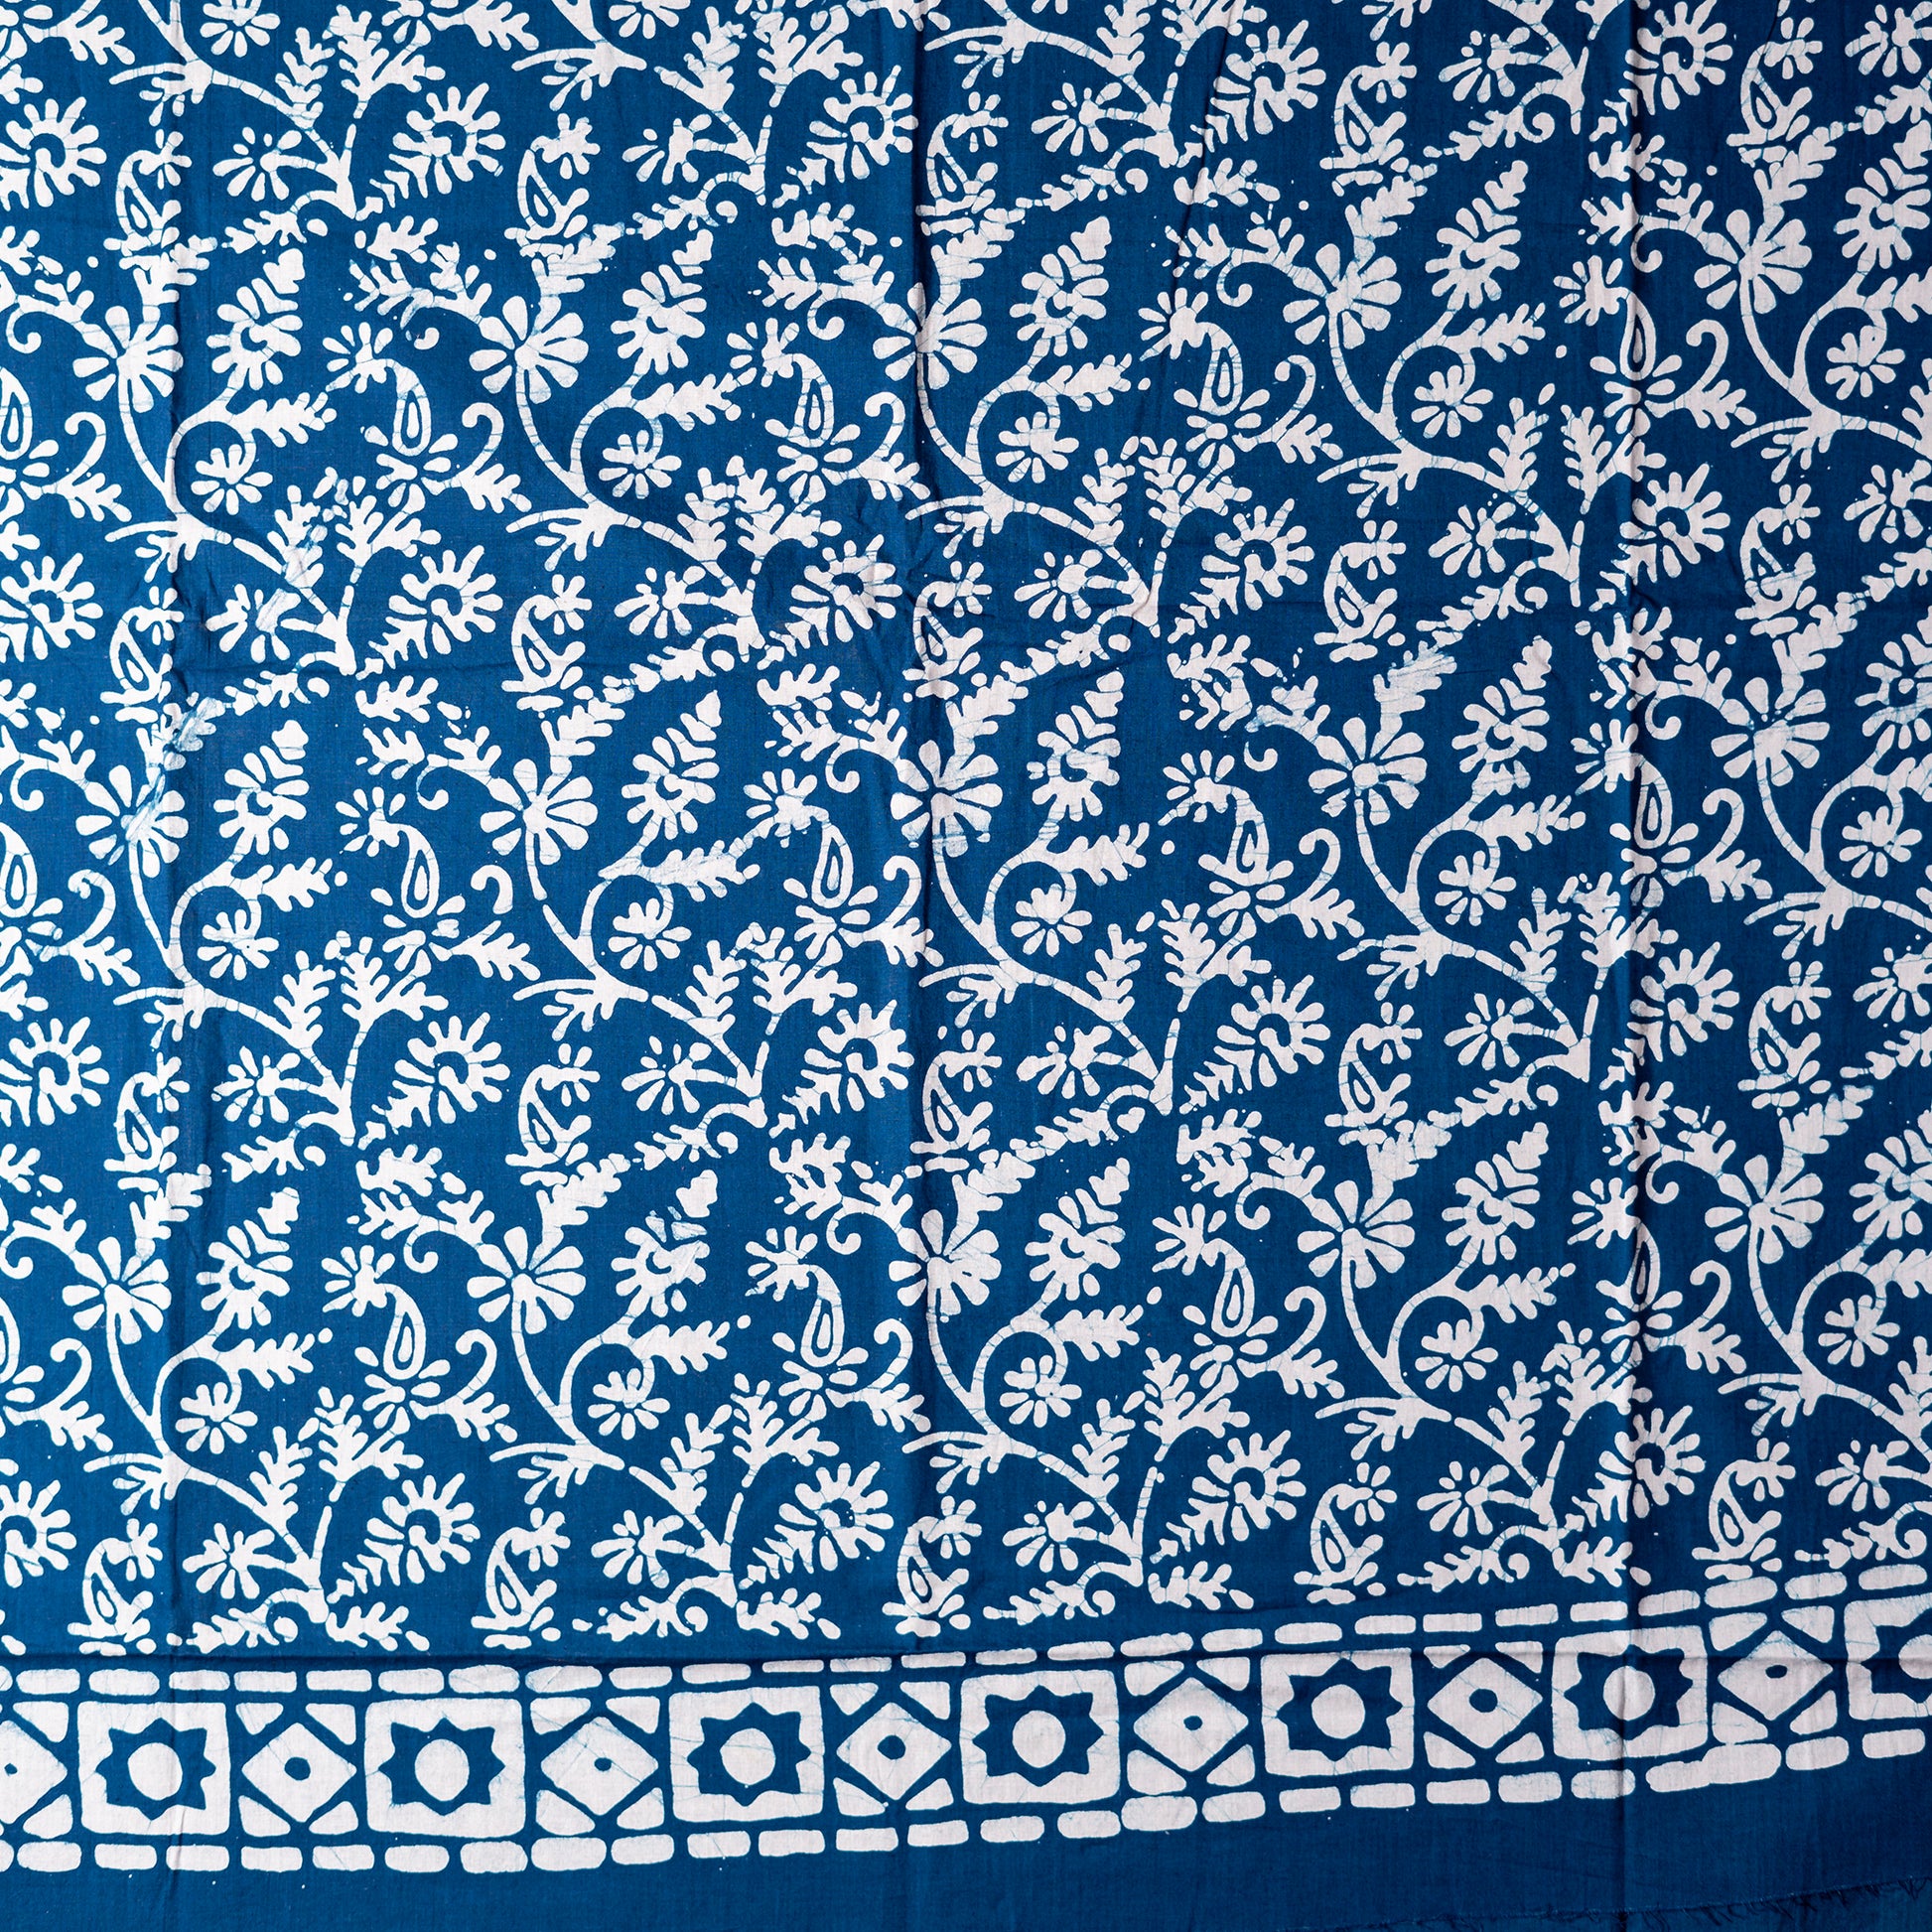 Cotton blue color wax batik dress material with white prints. 